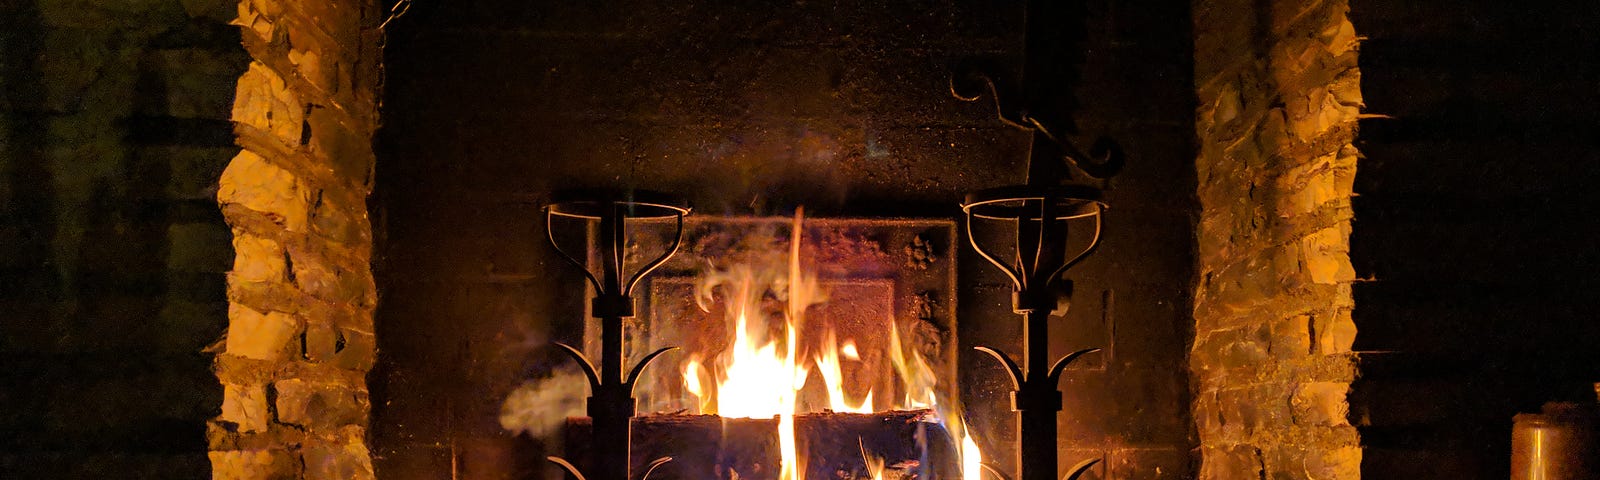 beautiful stone fireplace ablaze